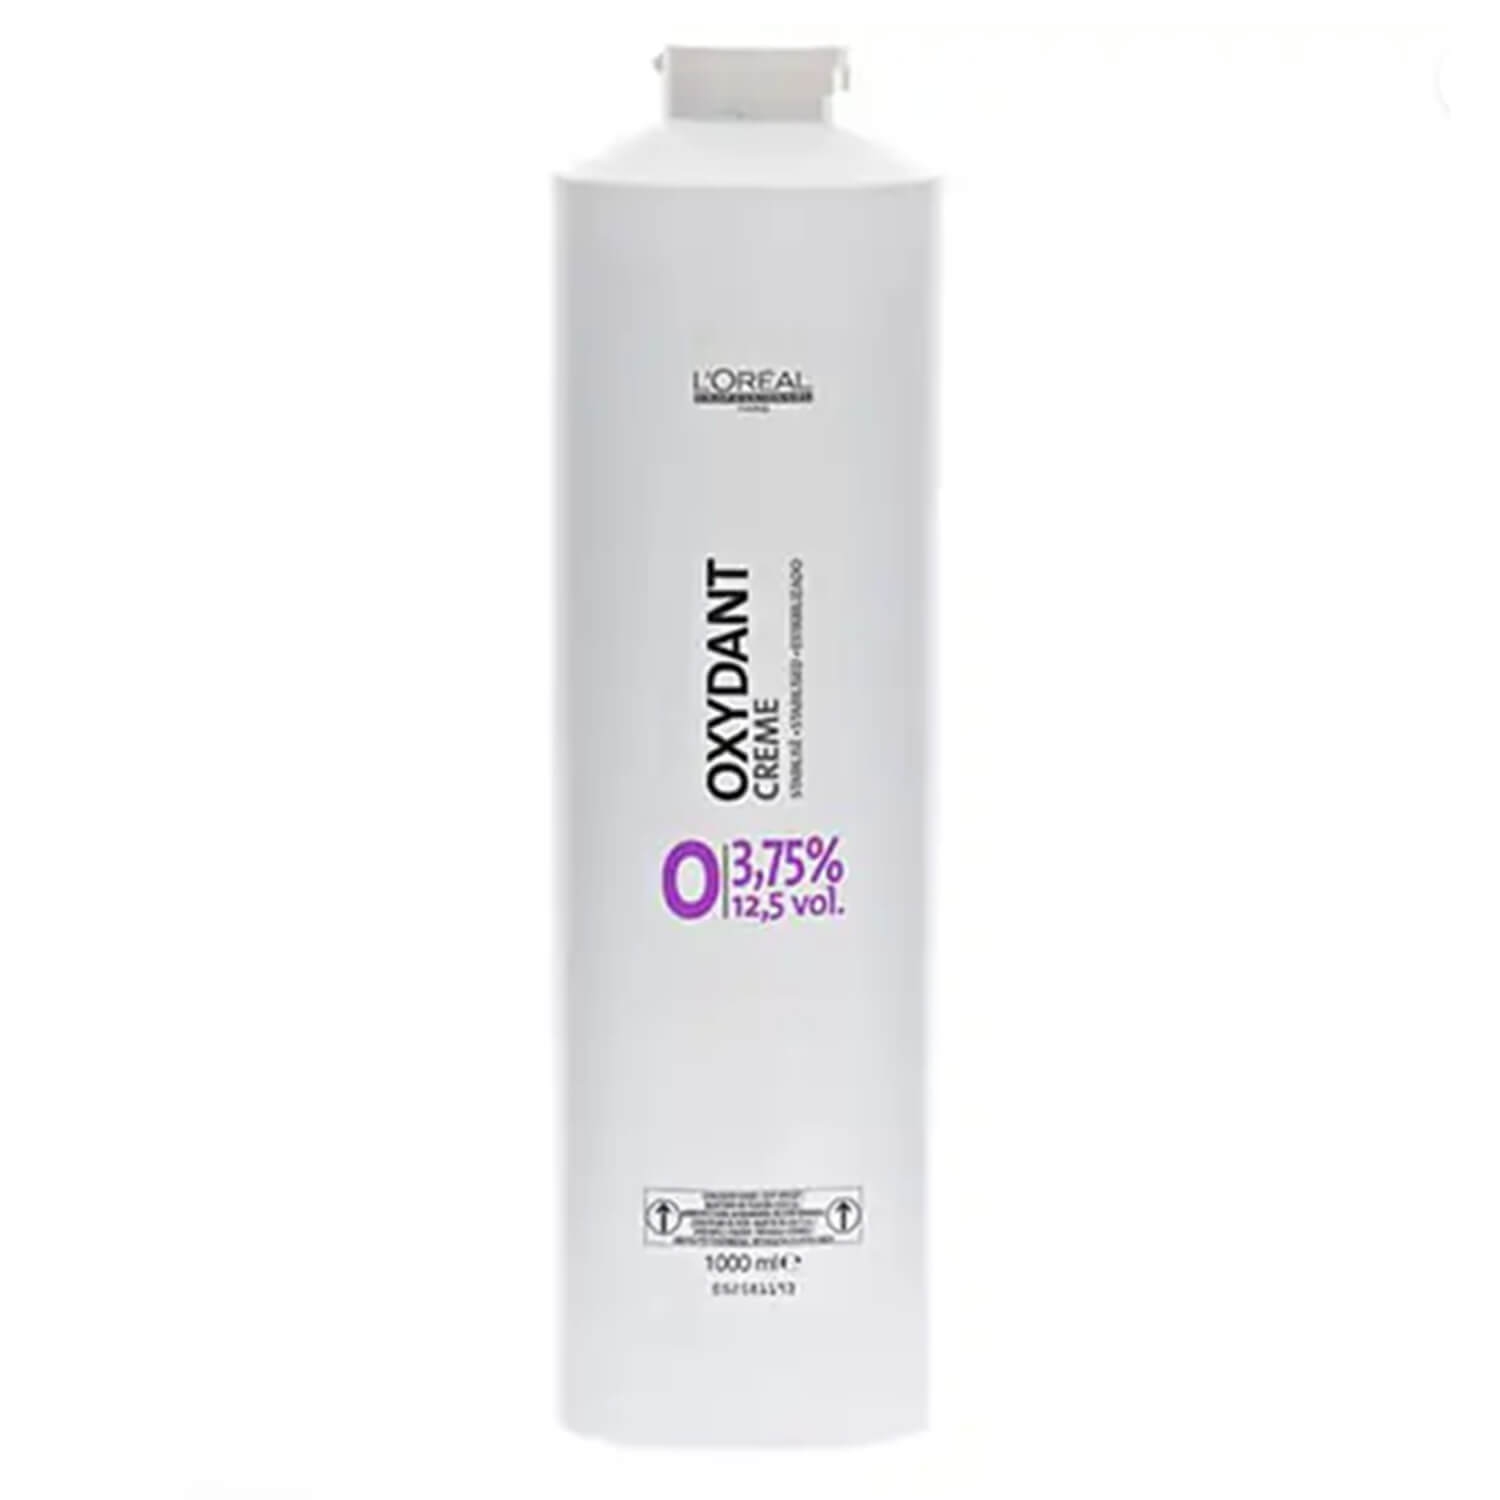 Image du produit de L'Oréal Oxydant - Crème 3.75% 12.5vol.